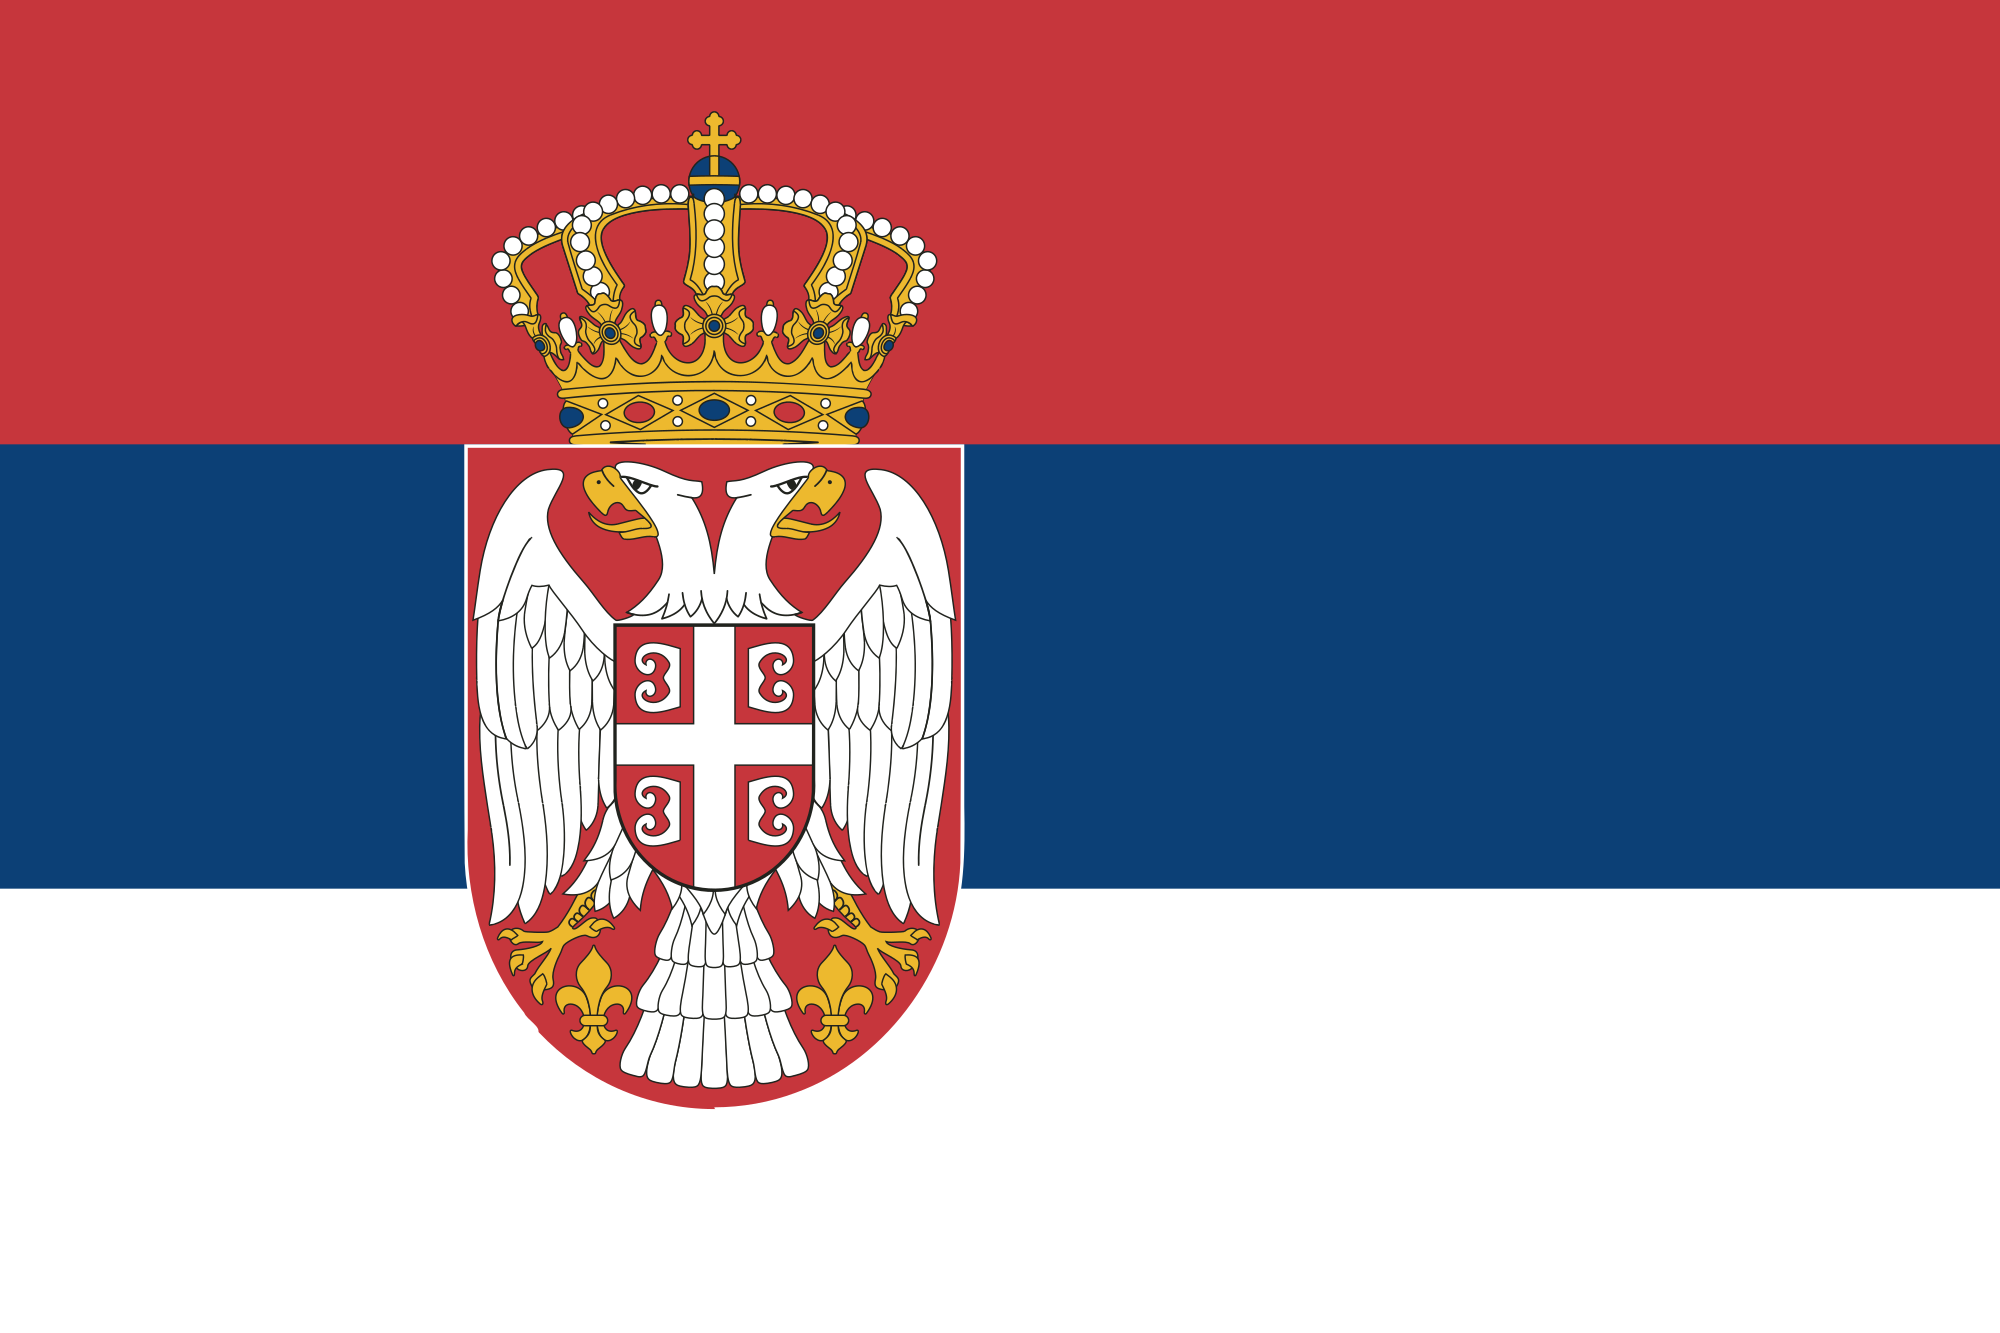 塞爾維亞國家隊(塞爾維亞國家籃球隊)